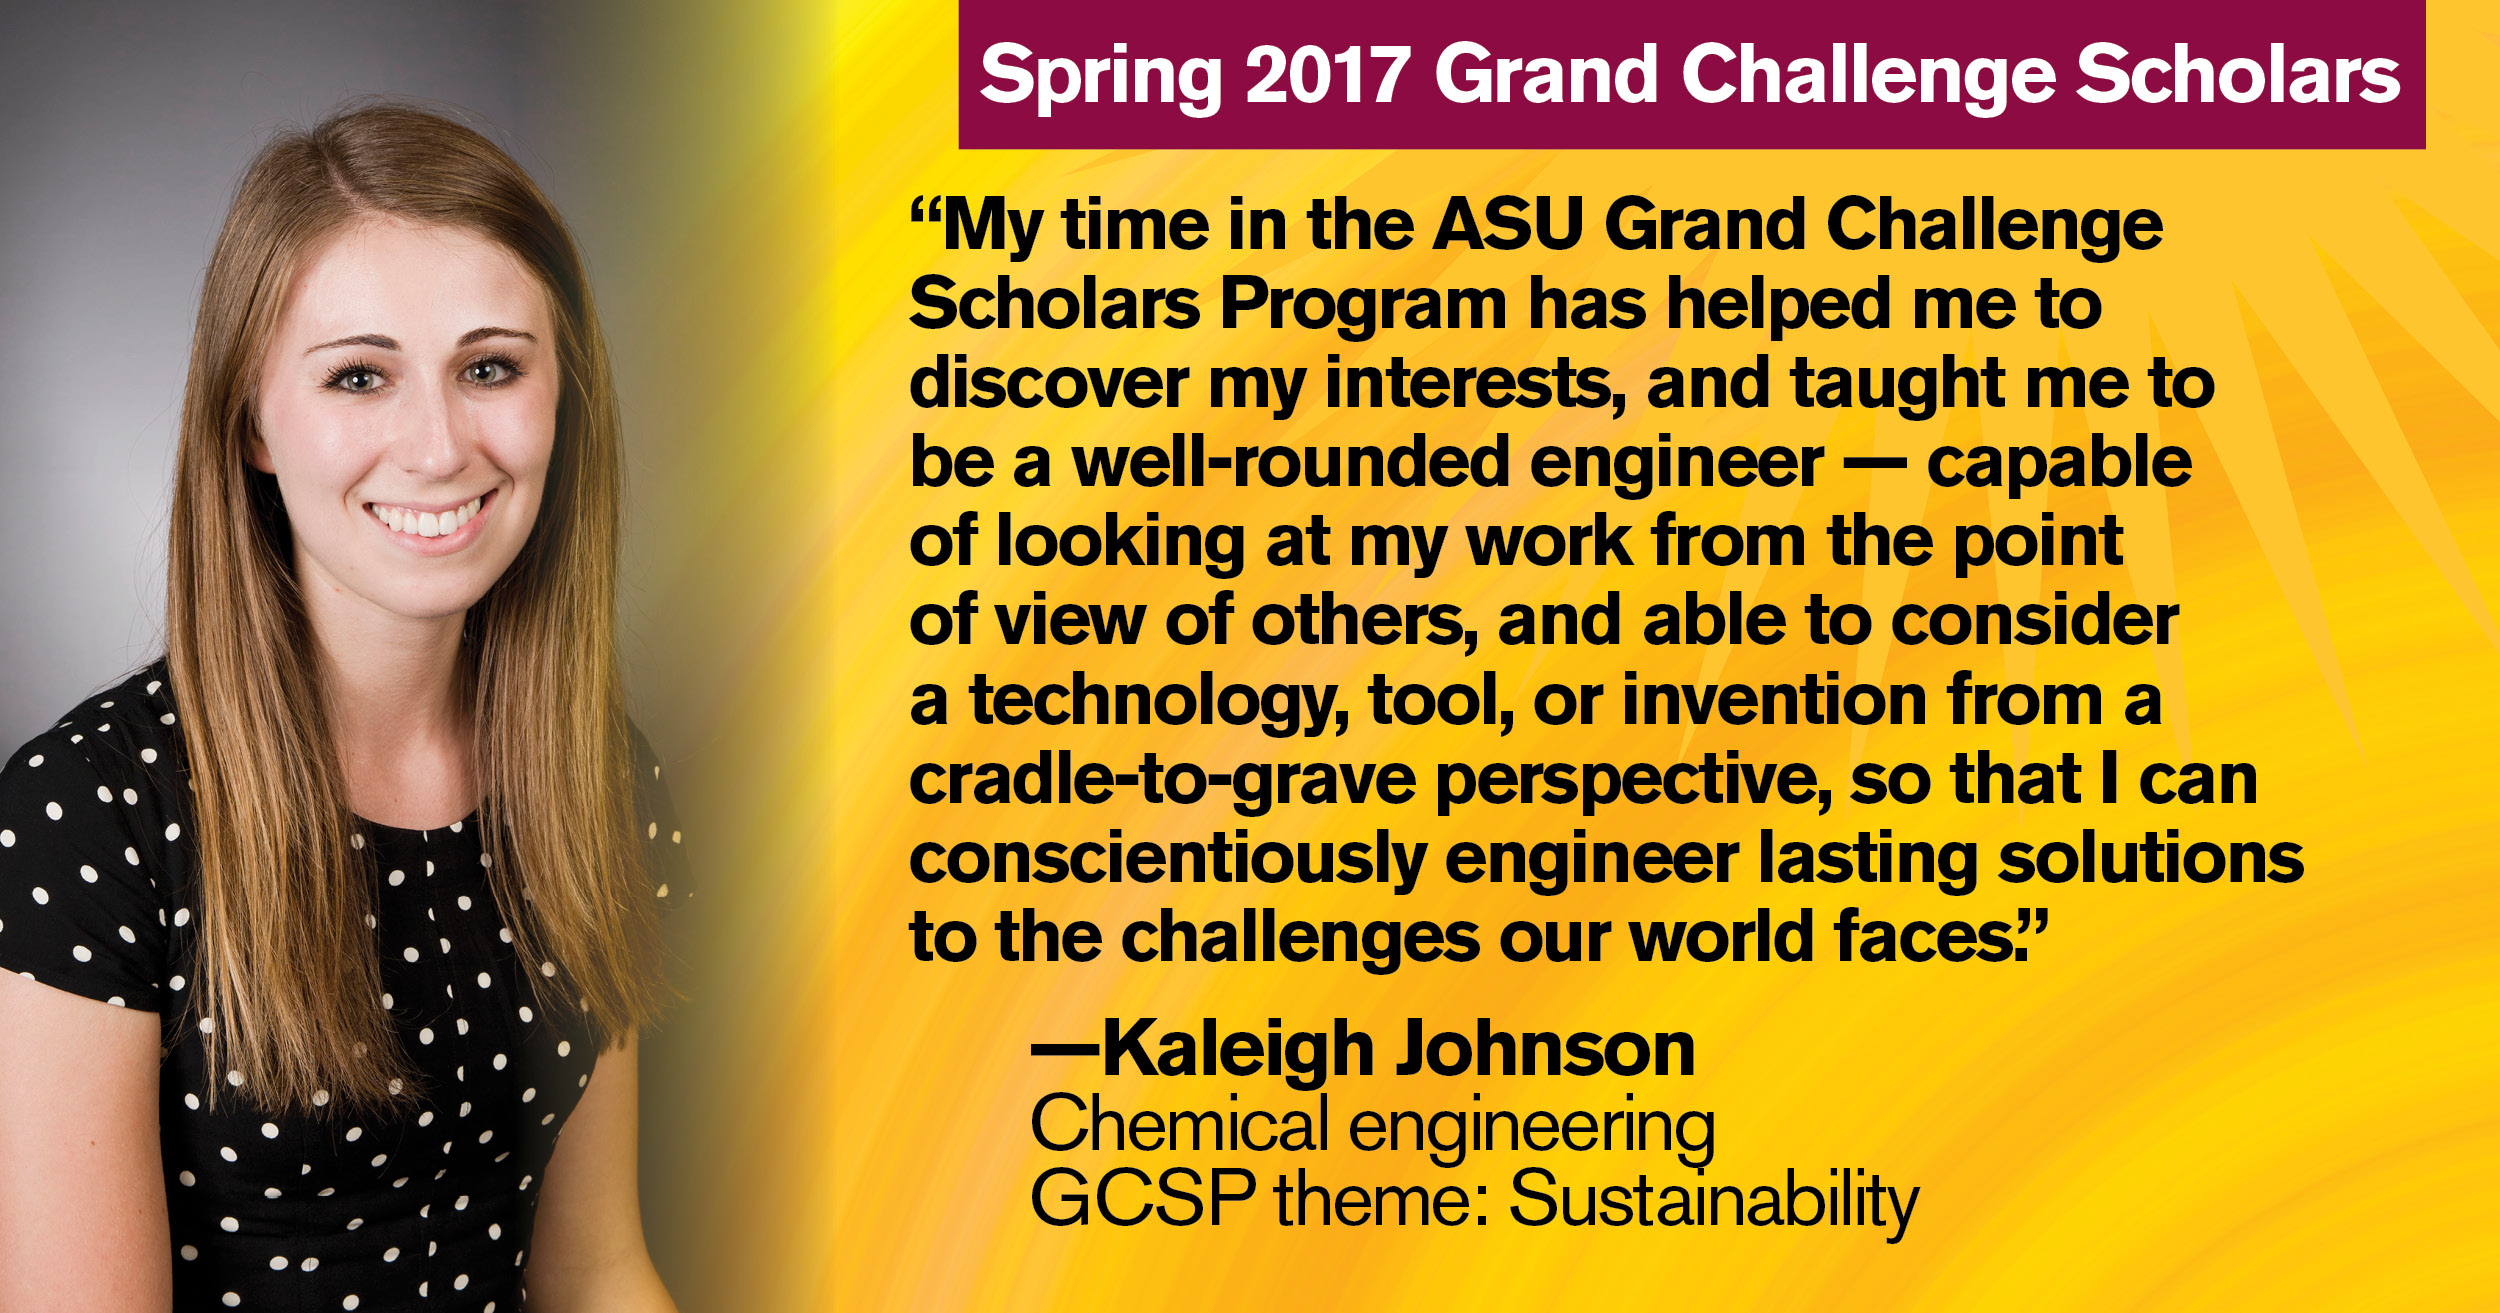 Spring 2017 Grand Challenge Scholar Kaleigh Johnson